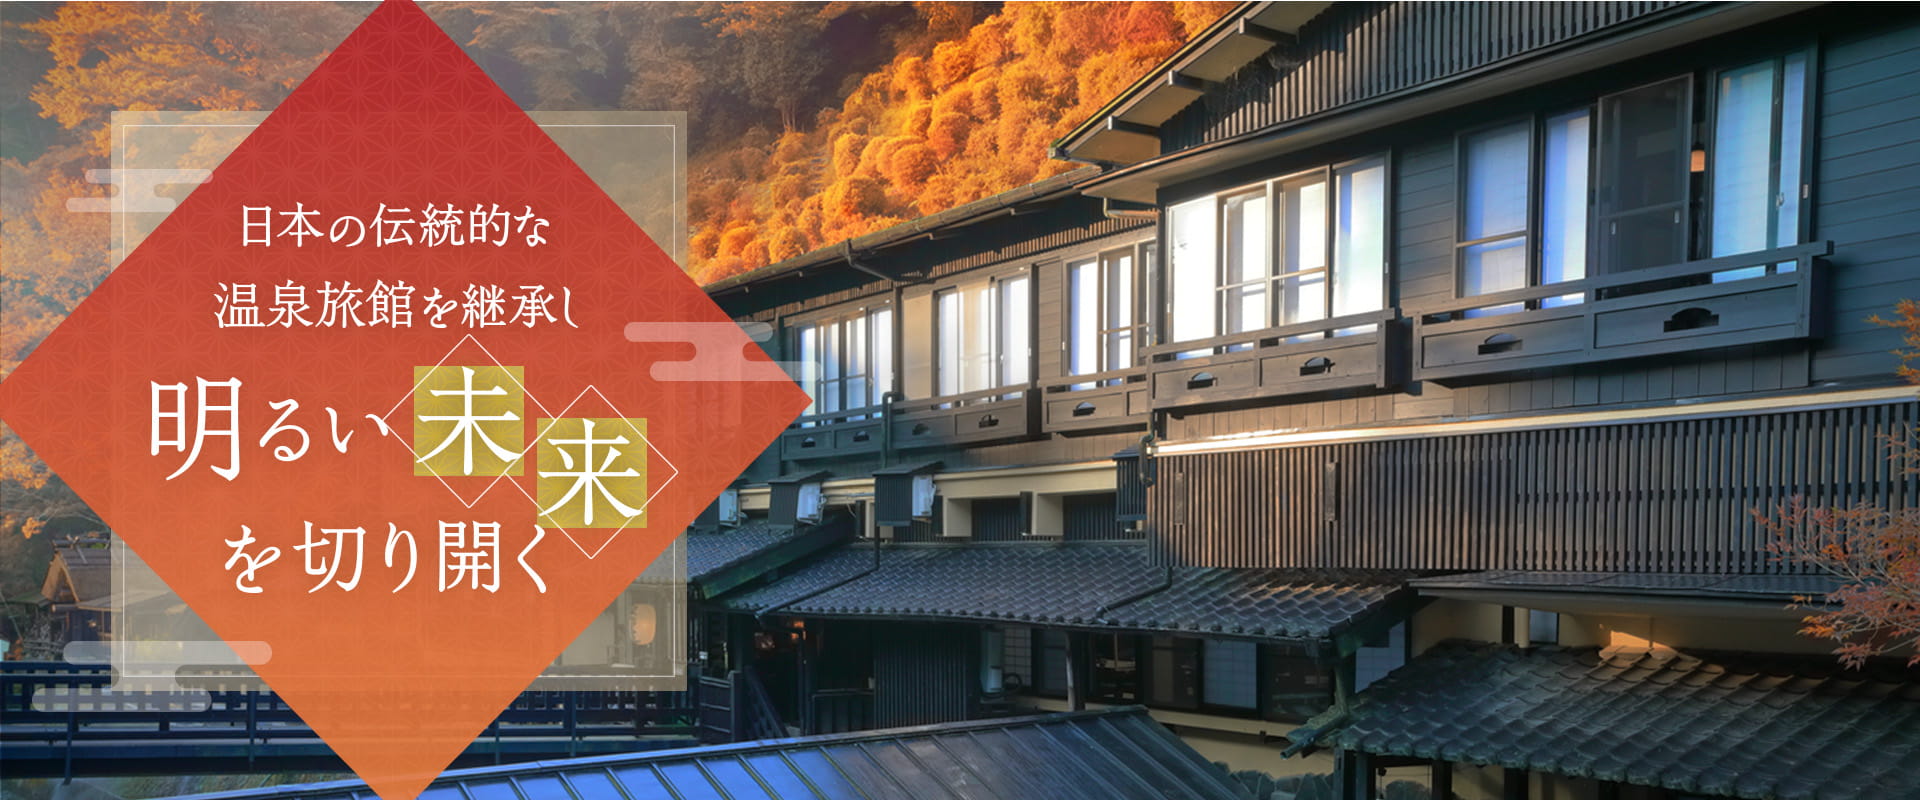 日本の伝統的な温泉旅館を継承し明るい未来を切り開く